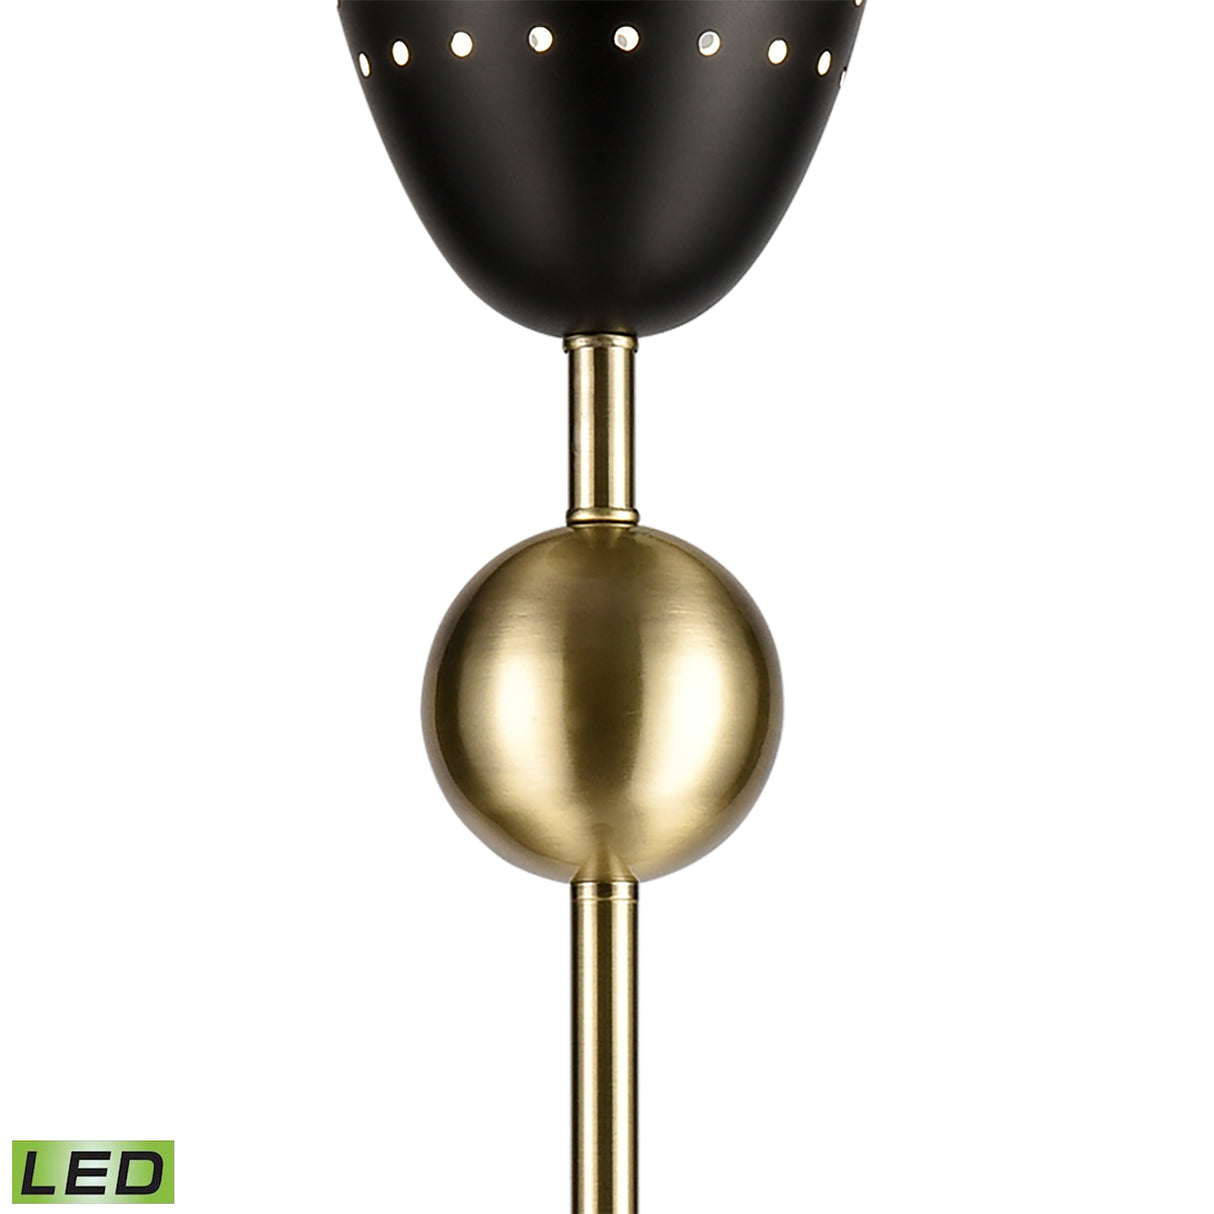 Elk D4691-LED Amulet 69.5'' High 1-Light Floor Lamp - Black - Includes LED Bulb